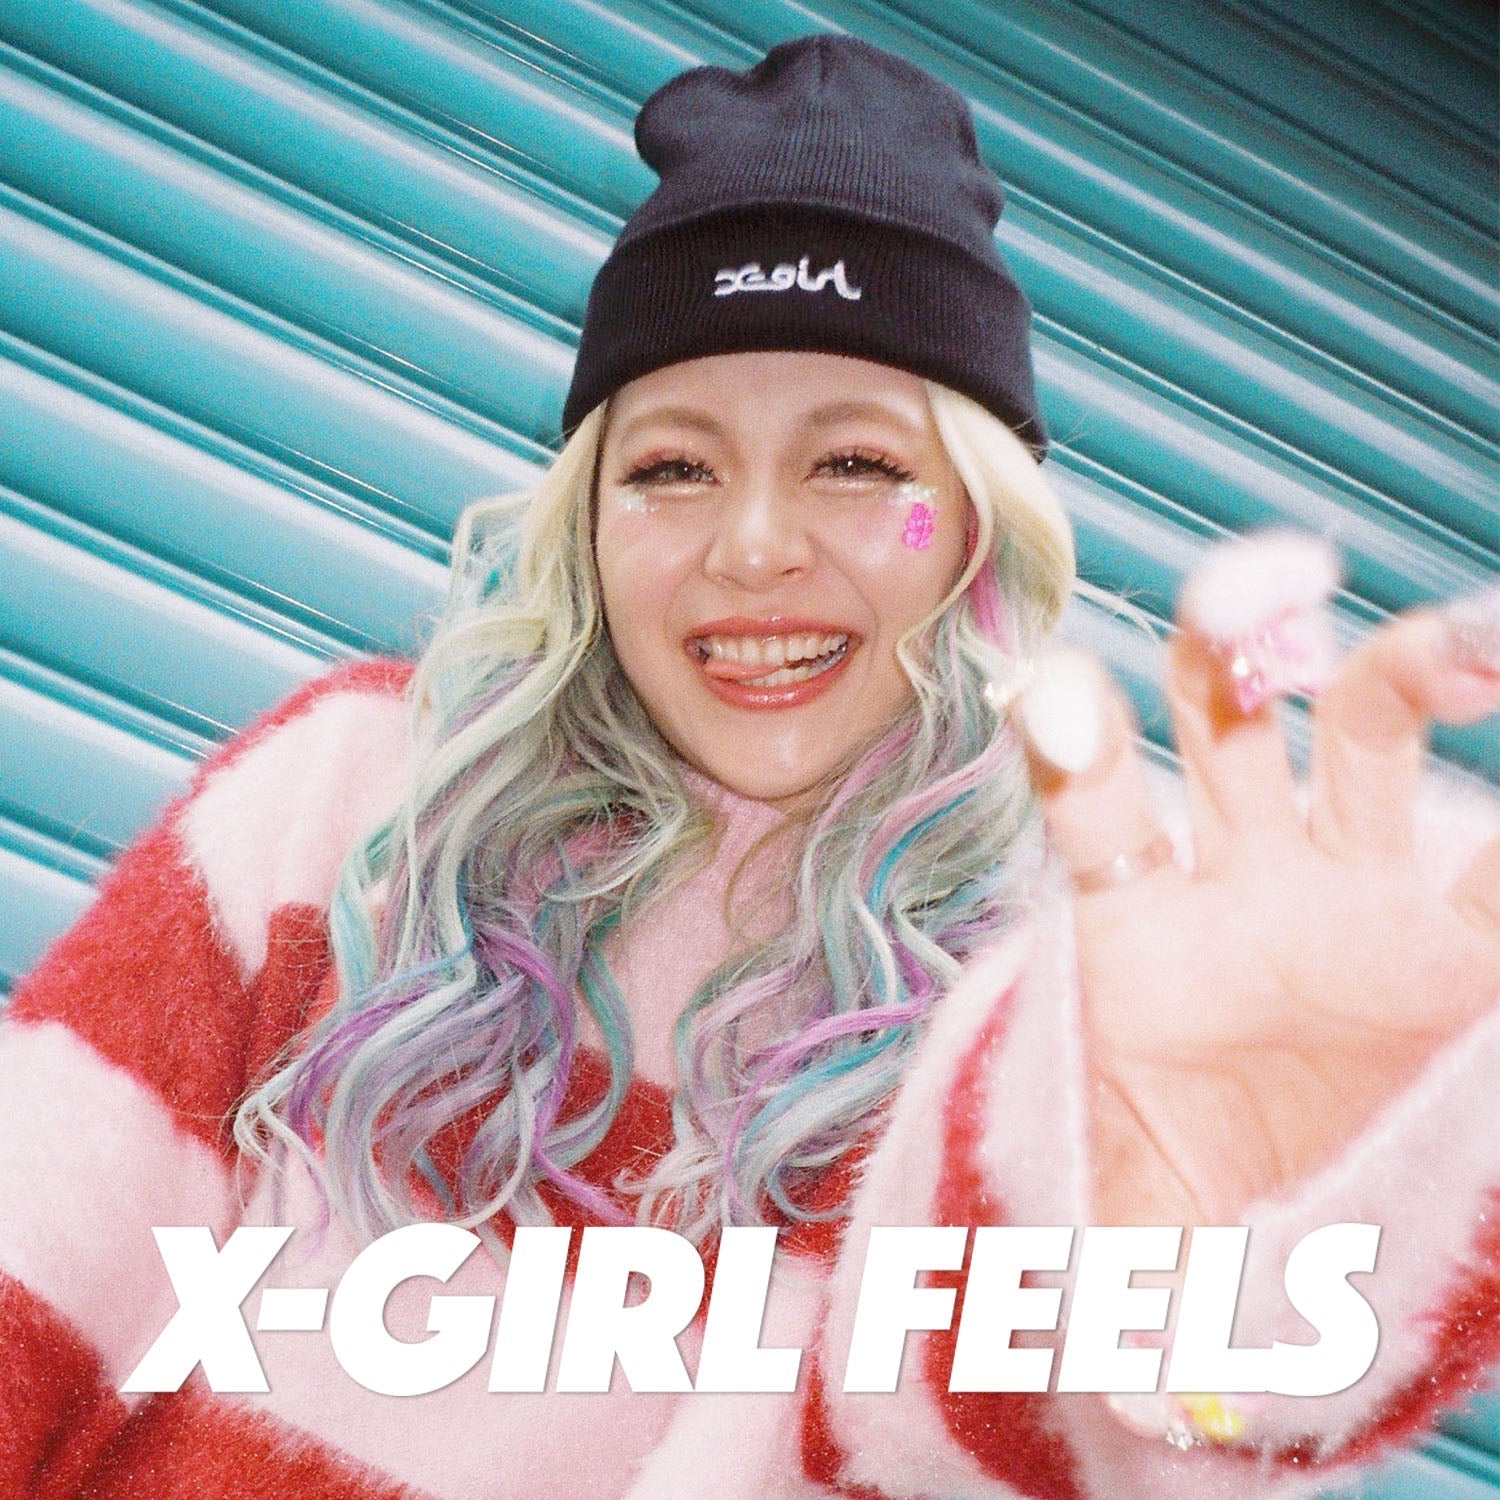 X-girl feels vol.15